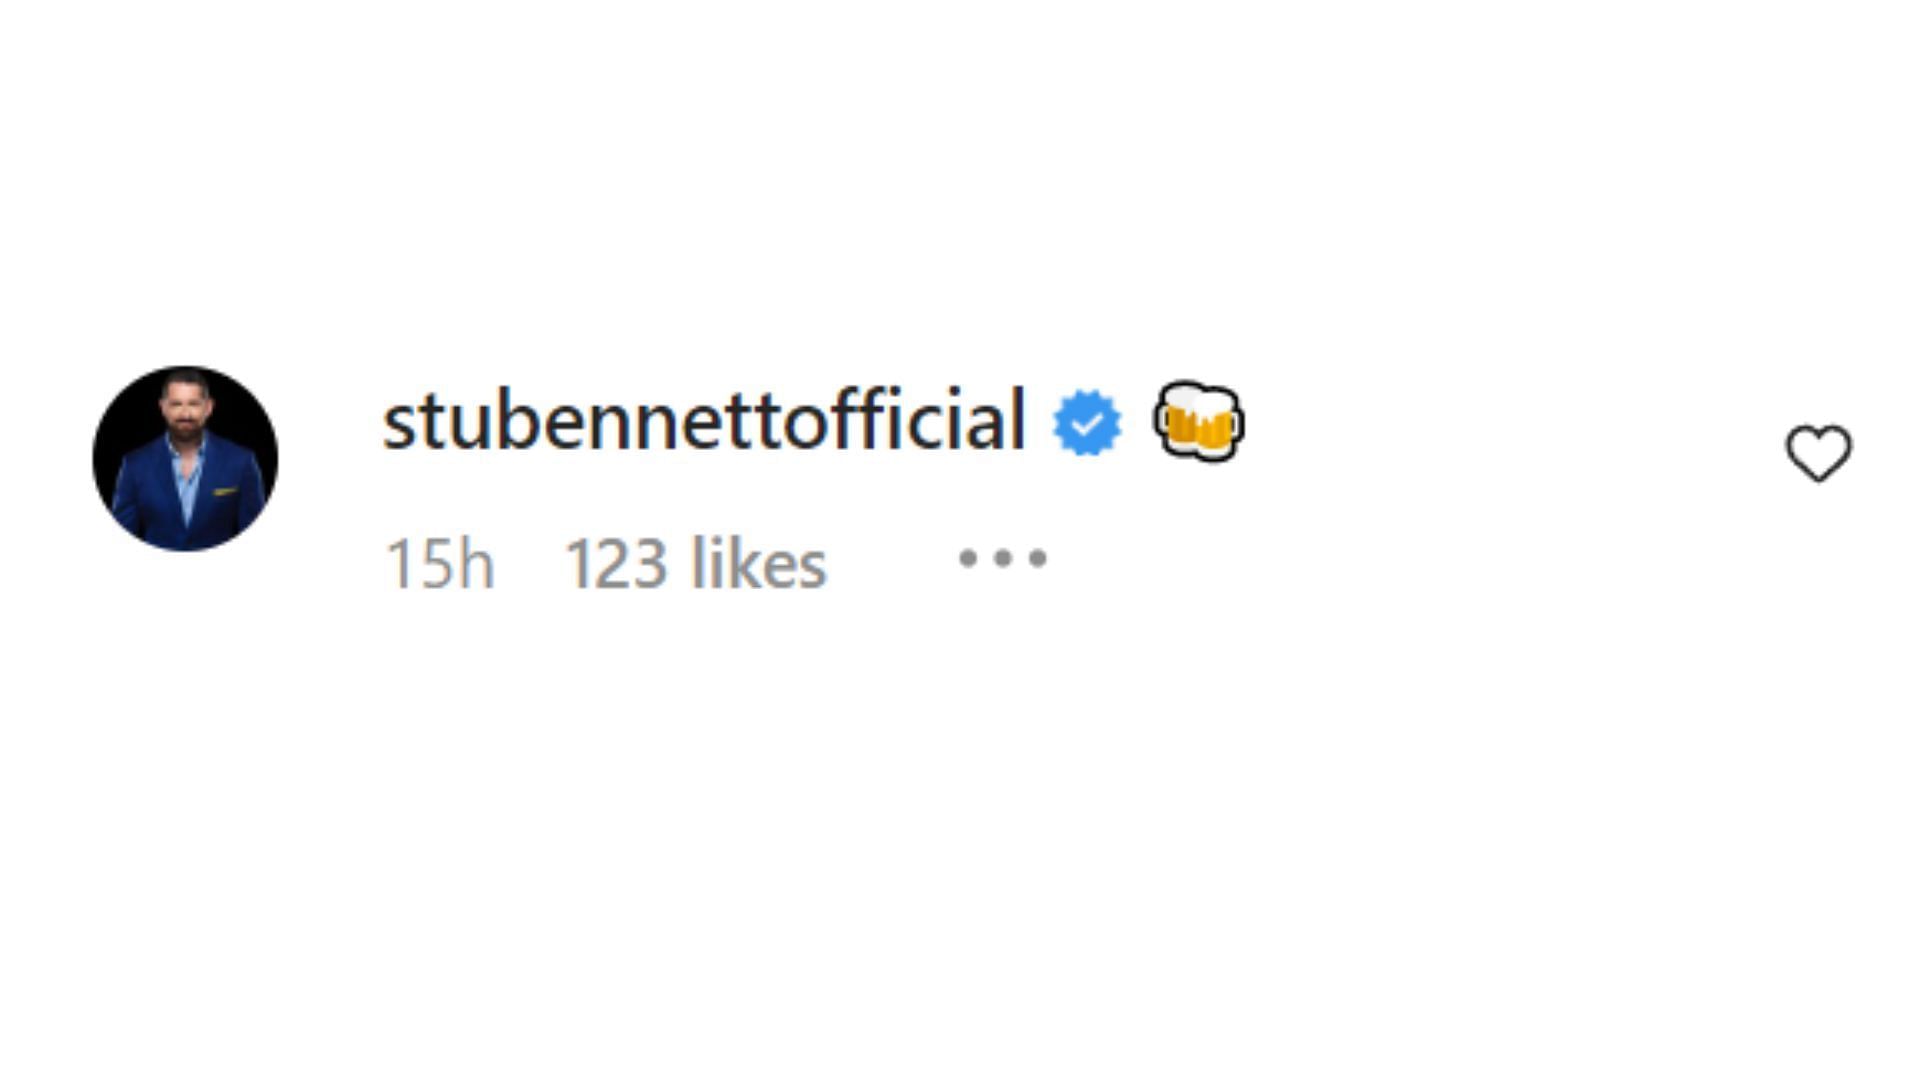 Stu Bennett (FKA Wade Barrett) left a single emoji in celebration.